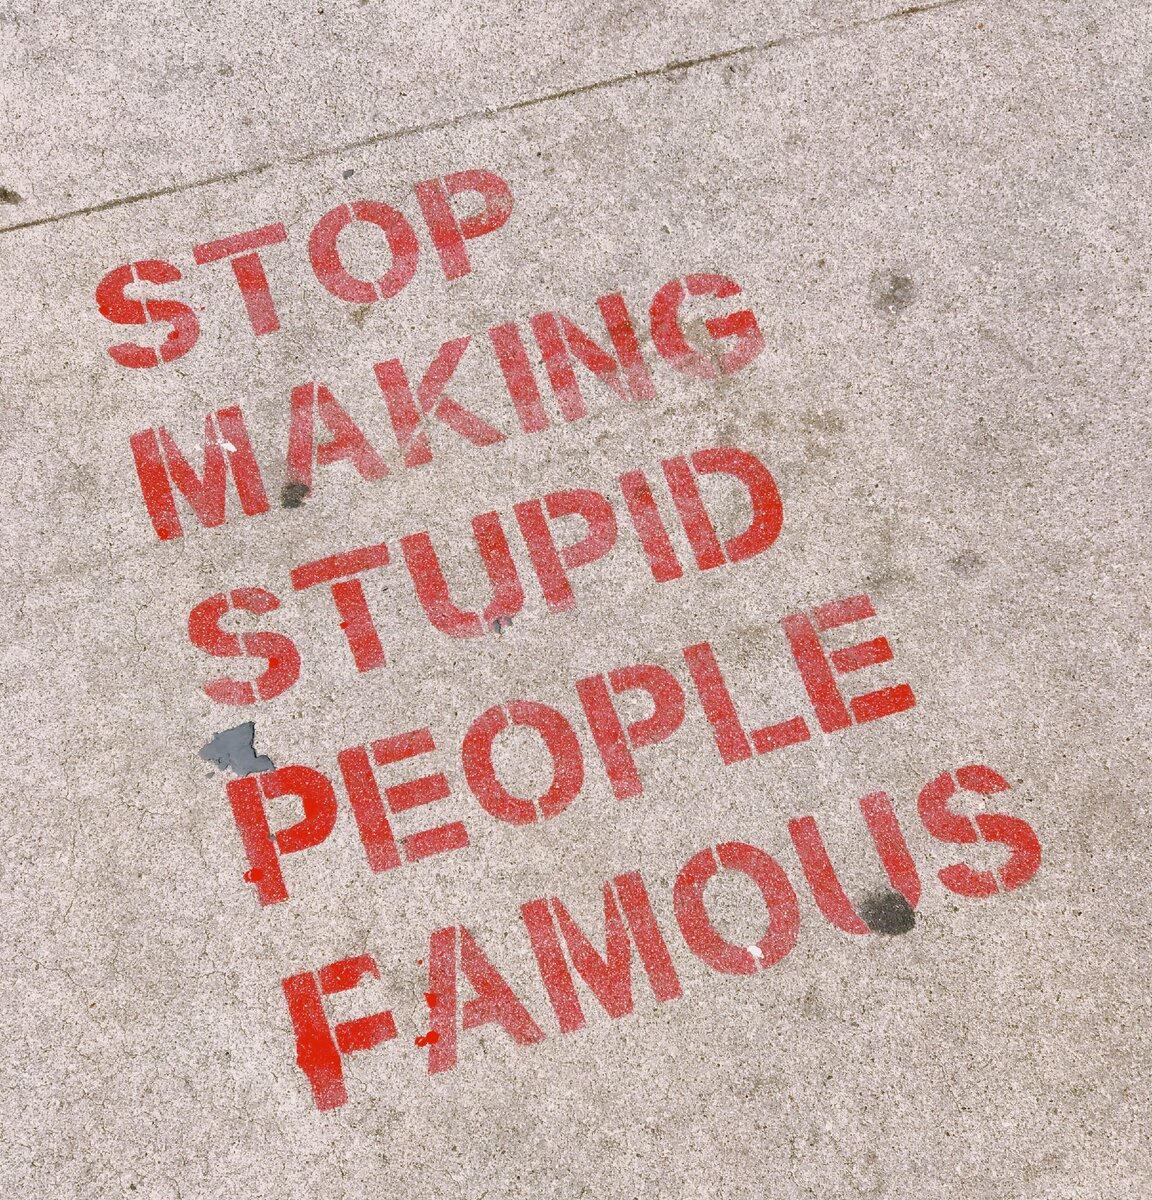 Хватит делать глупых людей знаменитыми